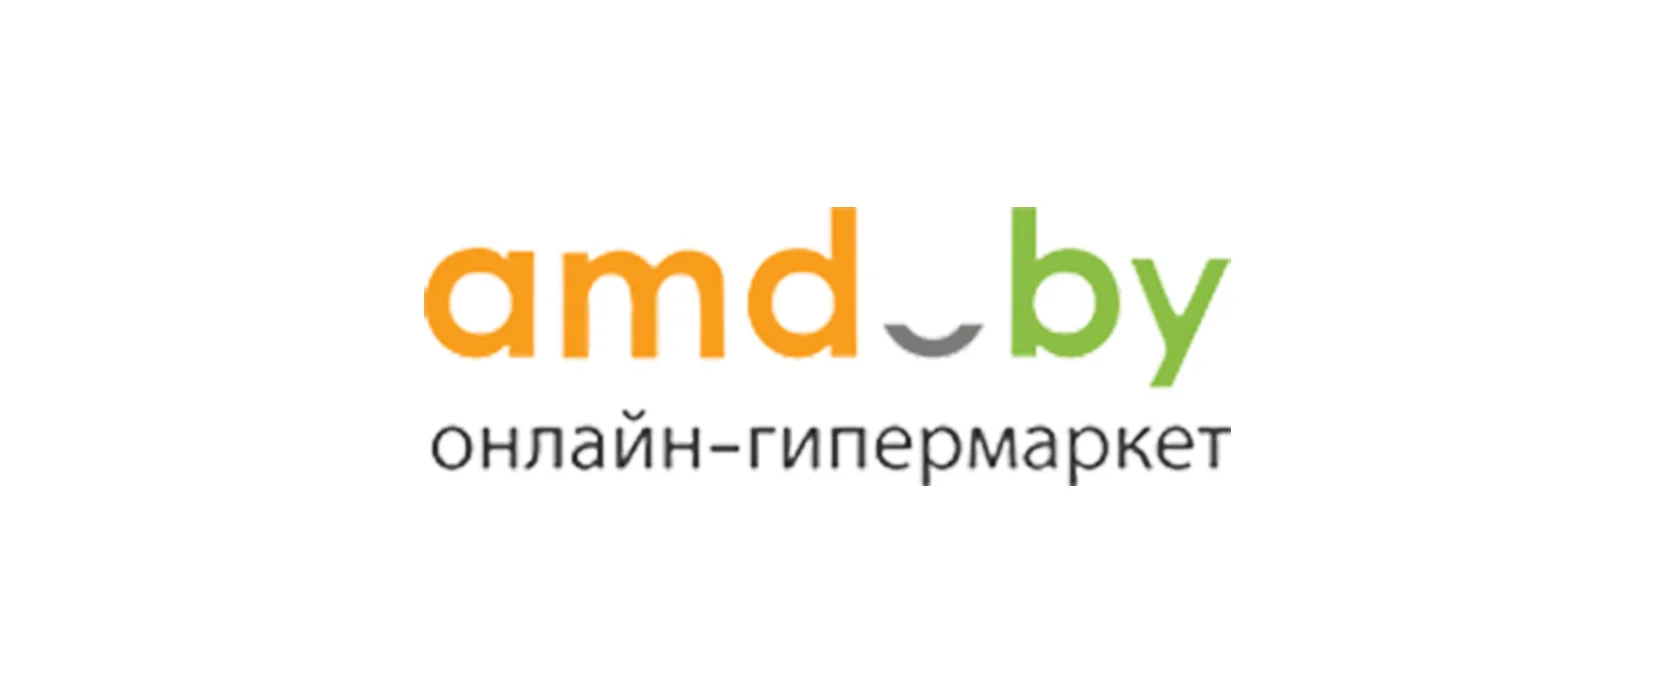 amd.by - онлайн-гипермаркет